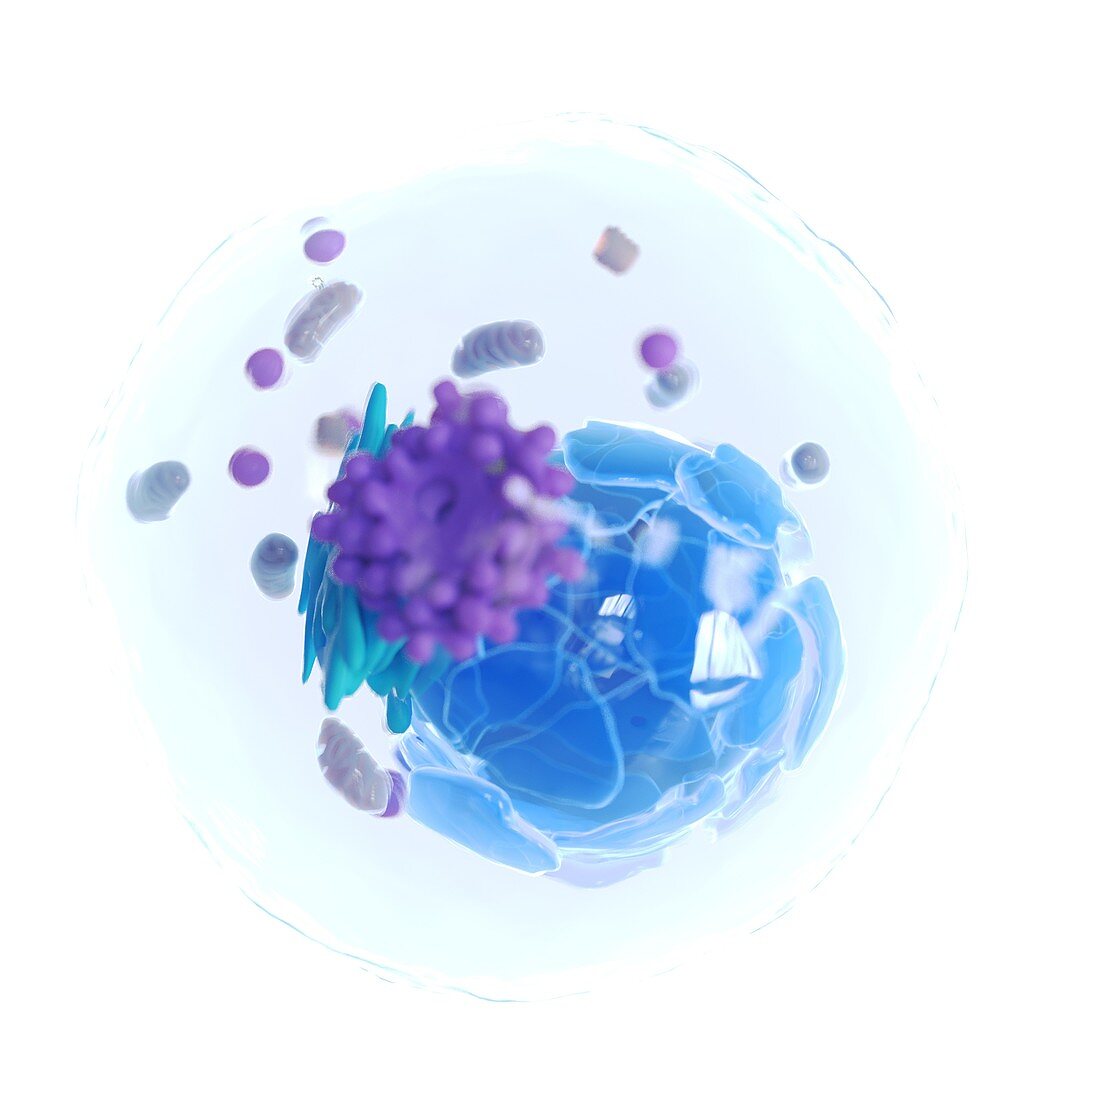 Animal cell, illustration